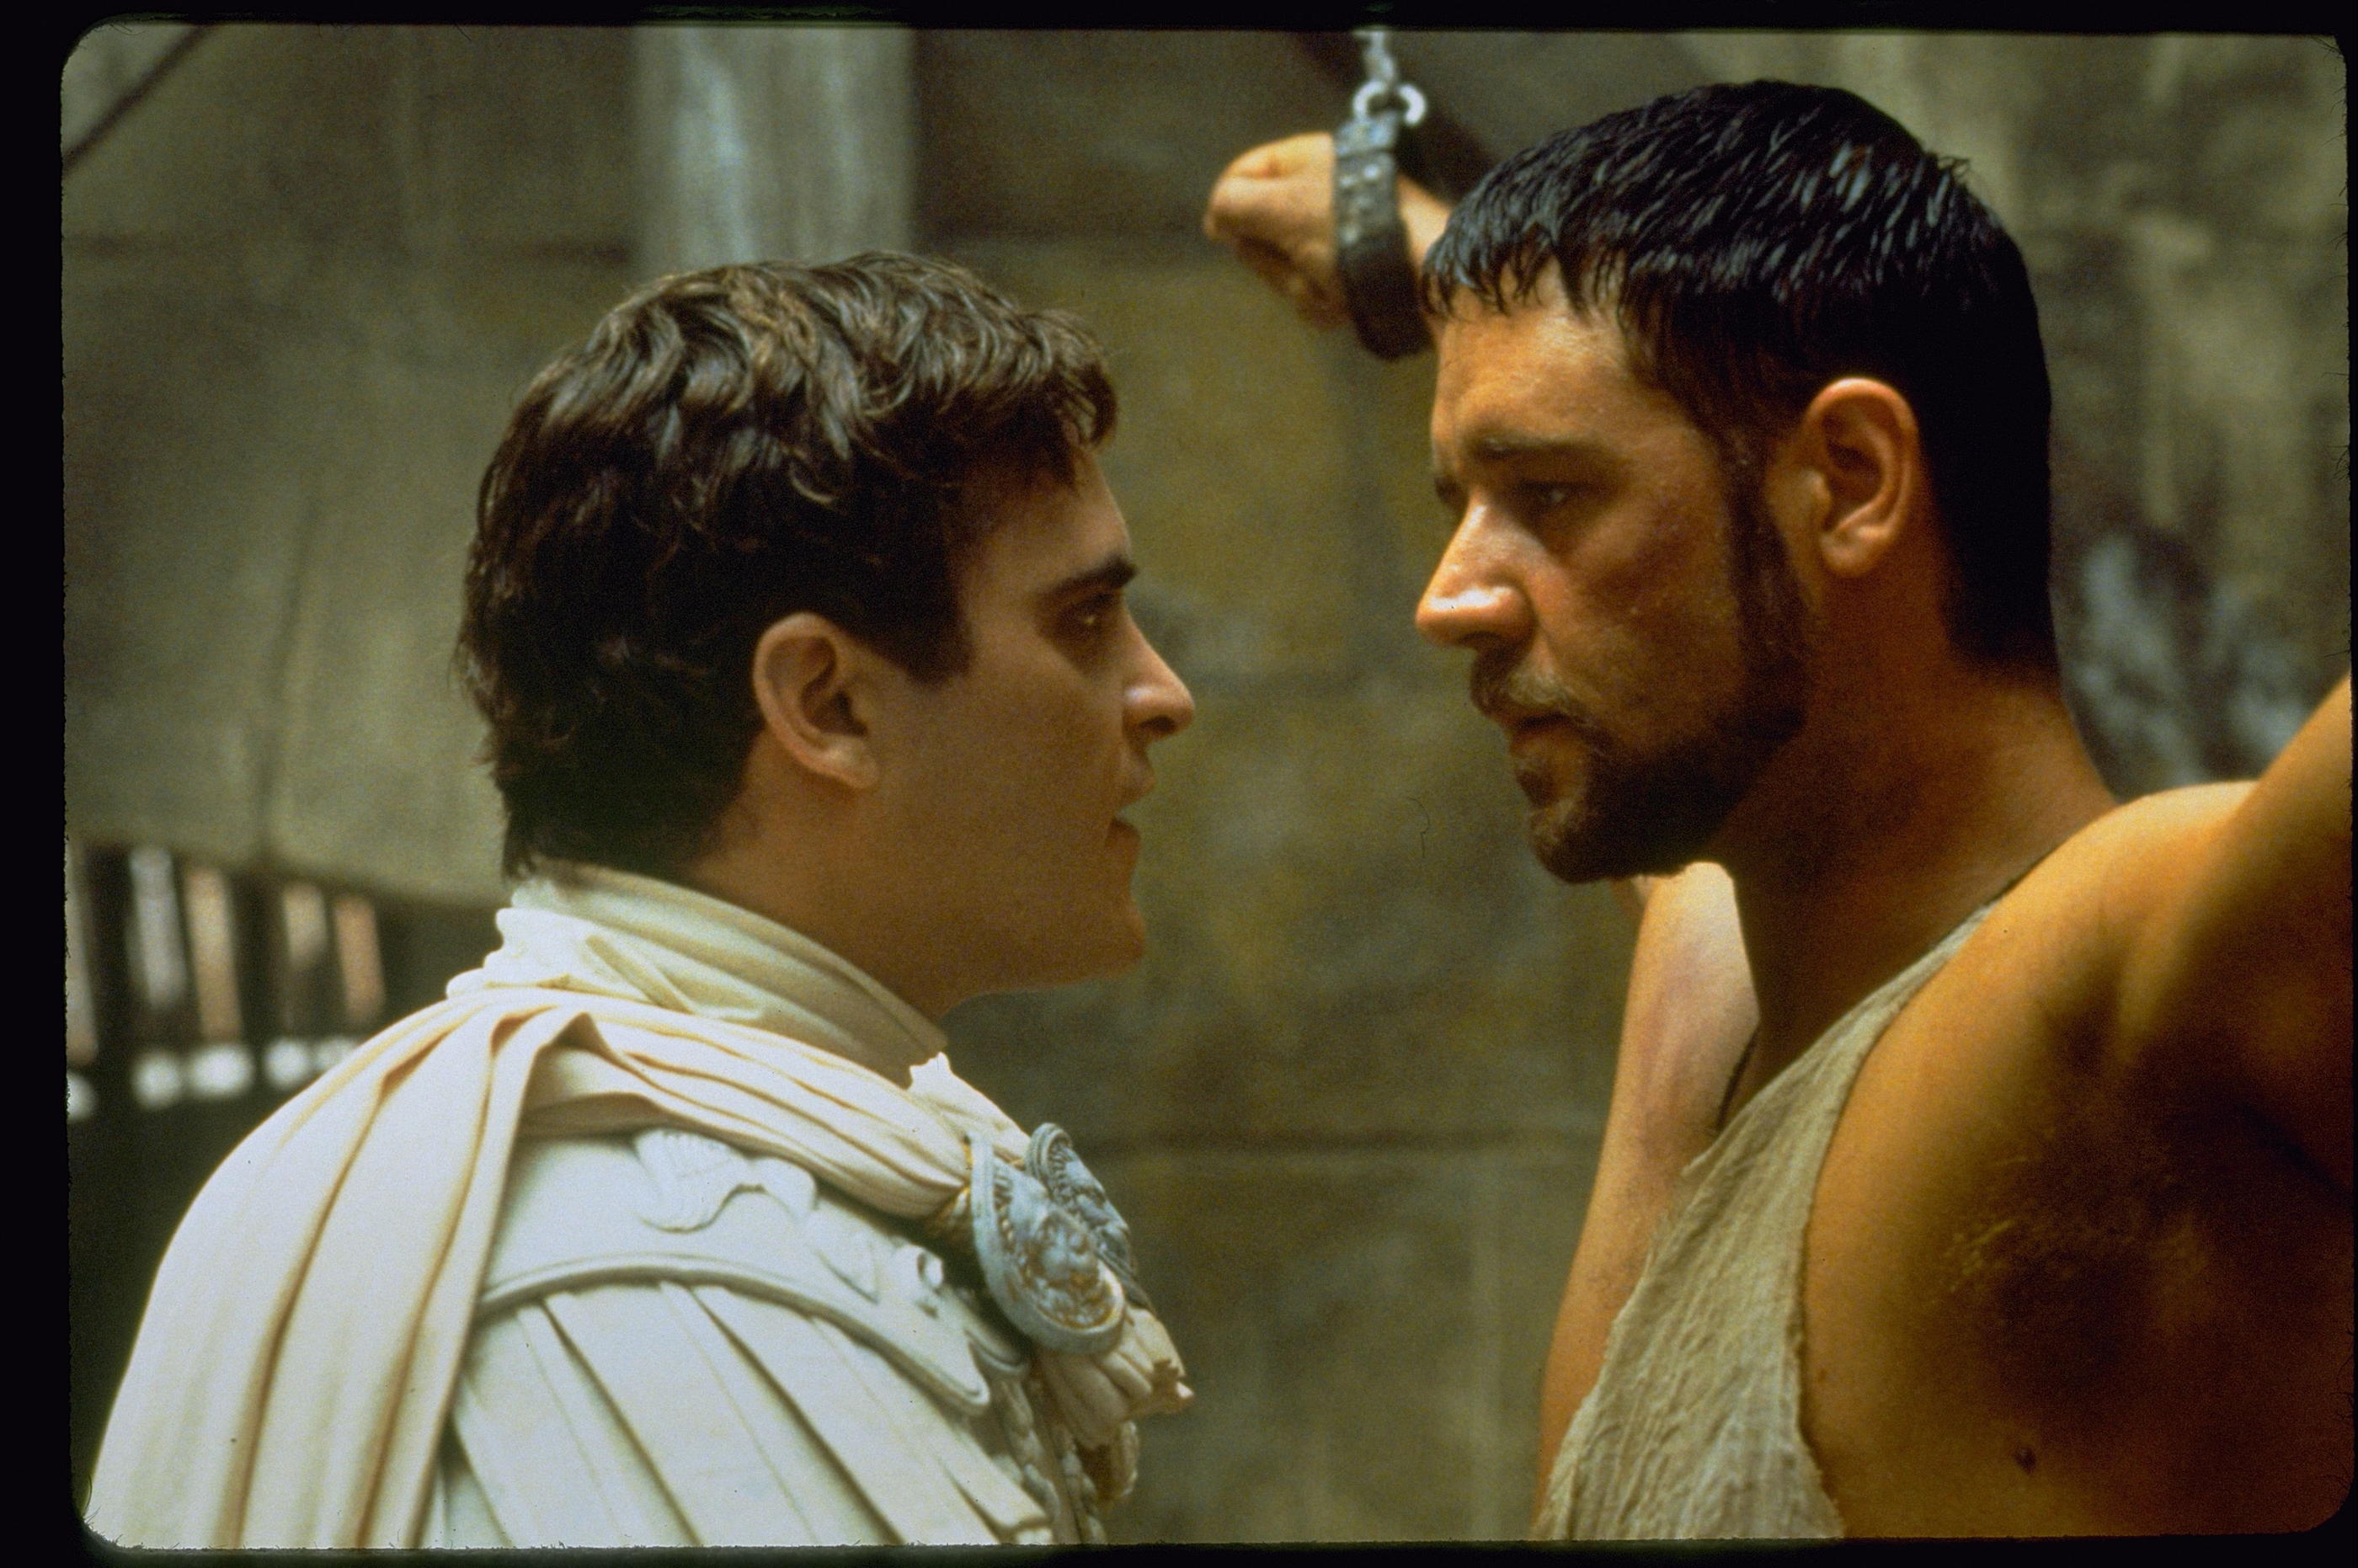 La suite de Gladiator se fera sans Russel Crowe et Joaquin Phoénix.